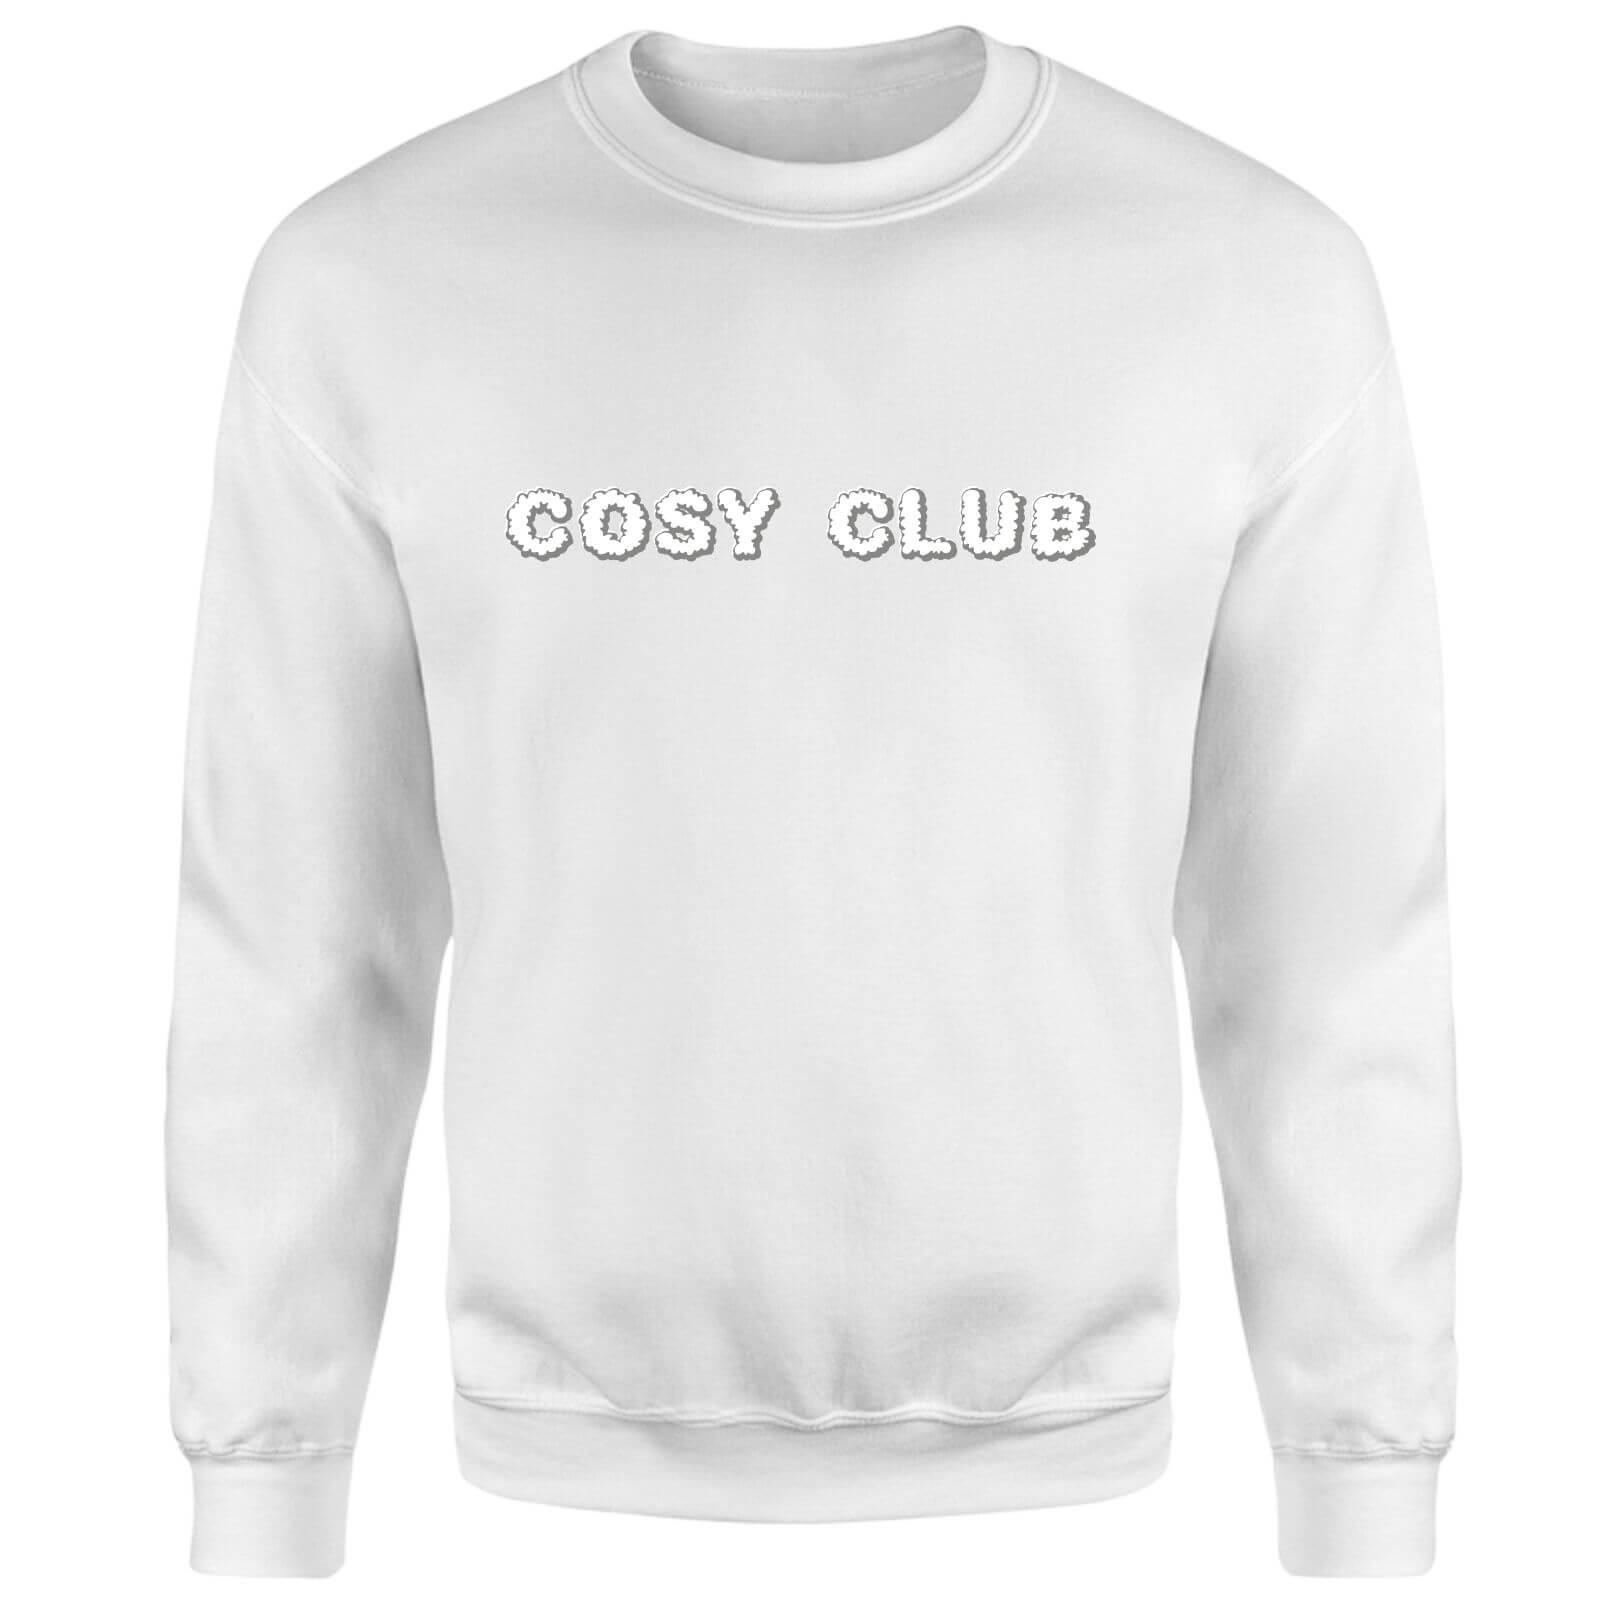 Cosy Club Sweatshirt - White - XS - White